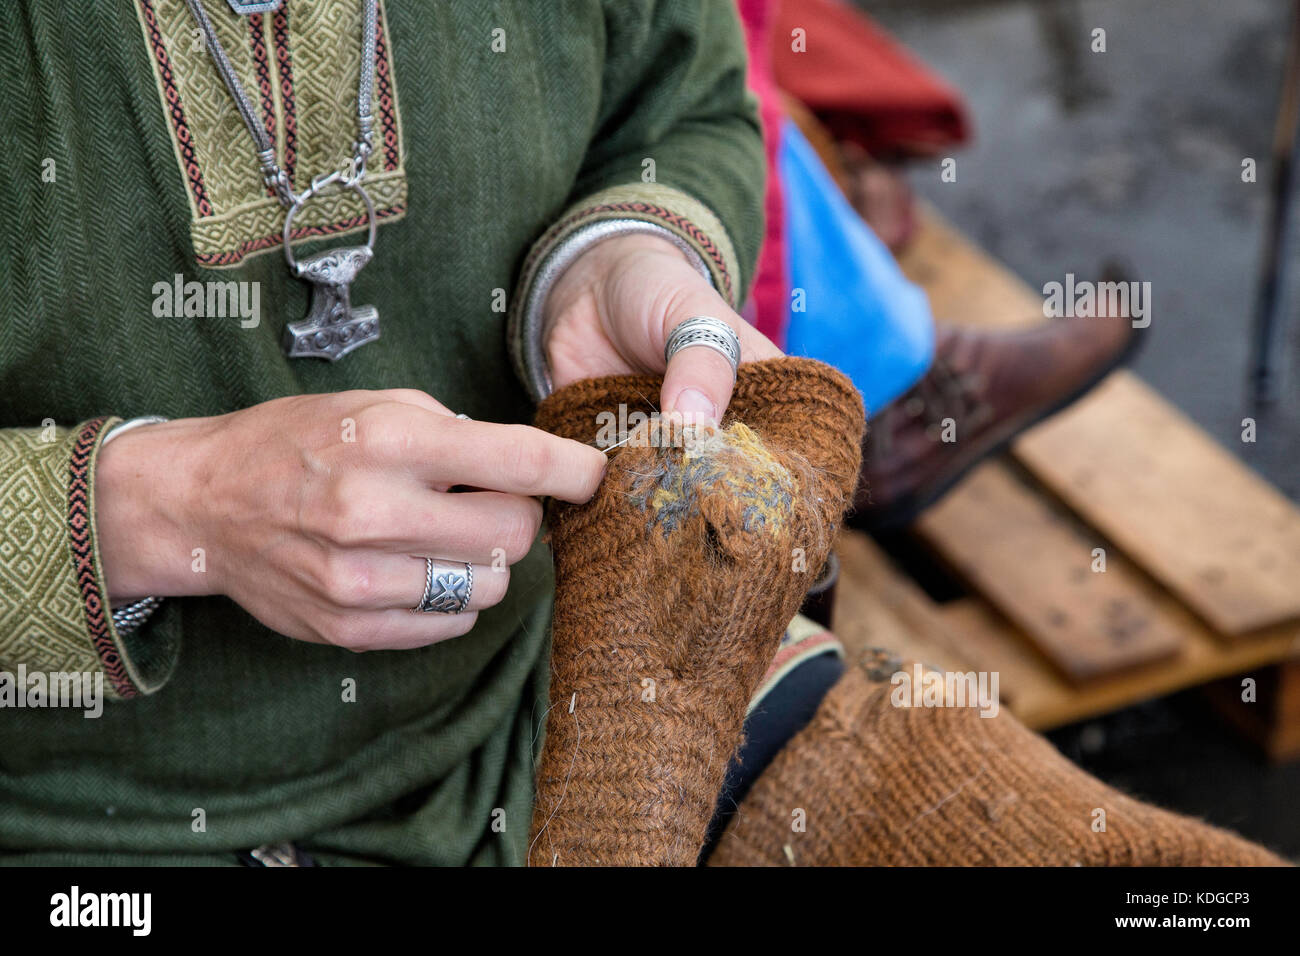 Persona medieval remendando calcetines de lana en una feria. Recorta shot mostrando las manos con calcetines de lana arreglando. Foto de stock